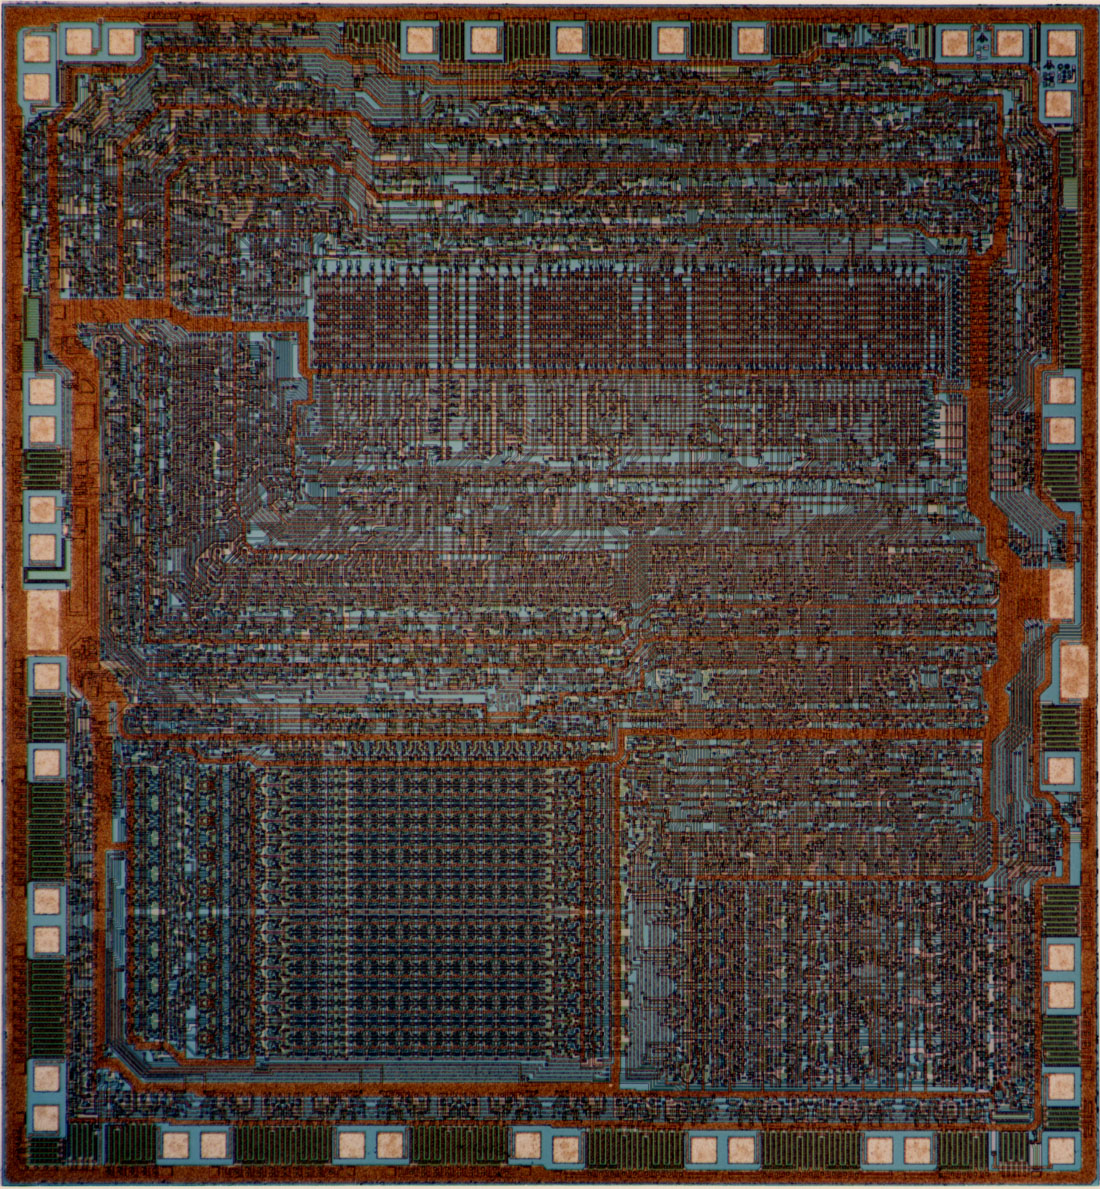 Zilog Z80 CPU.jpg